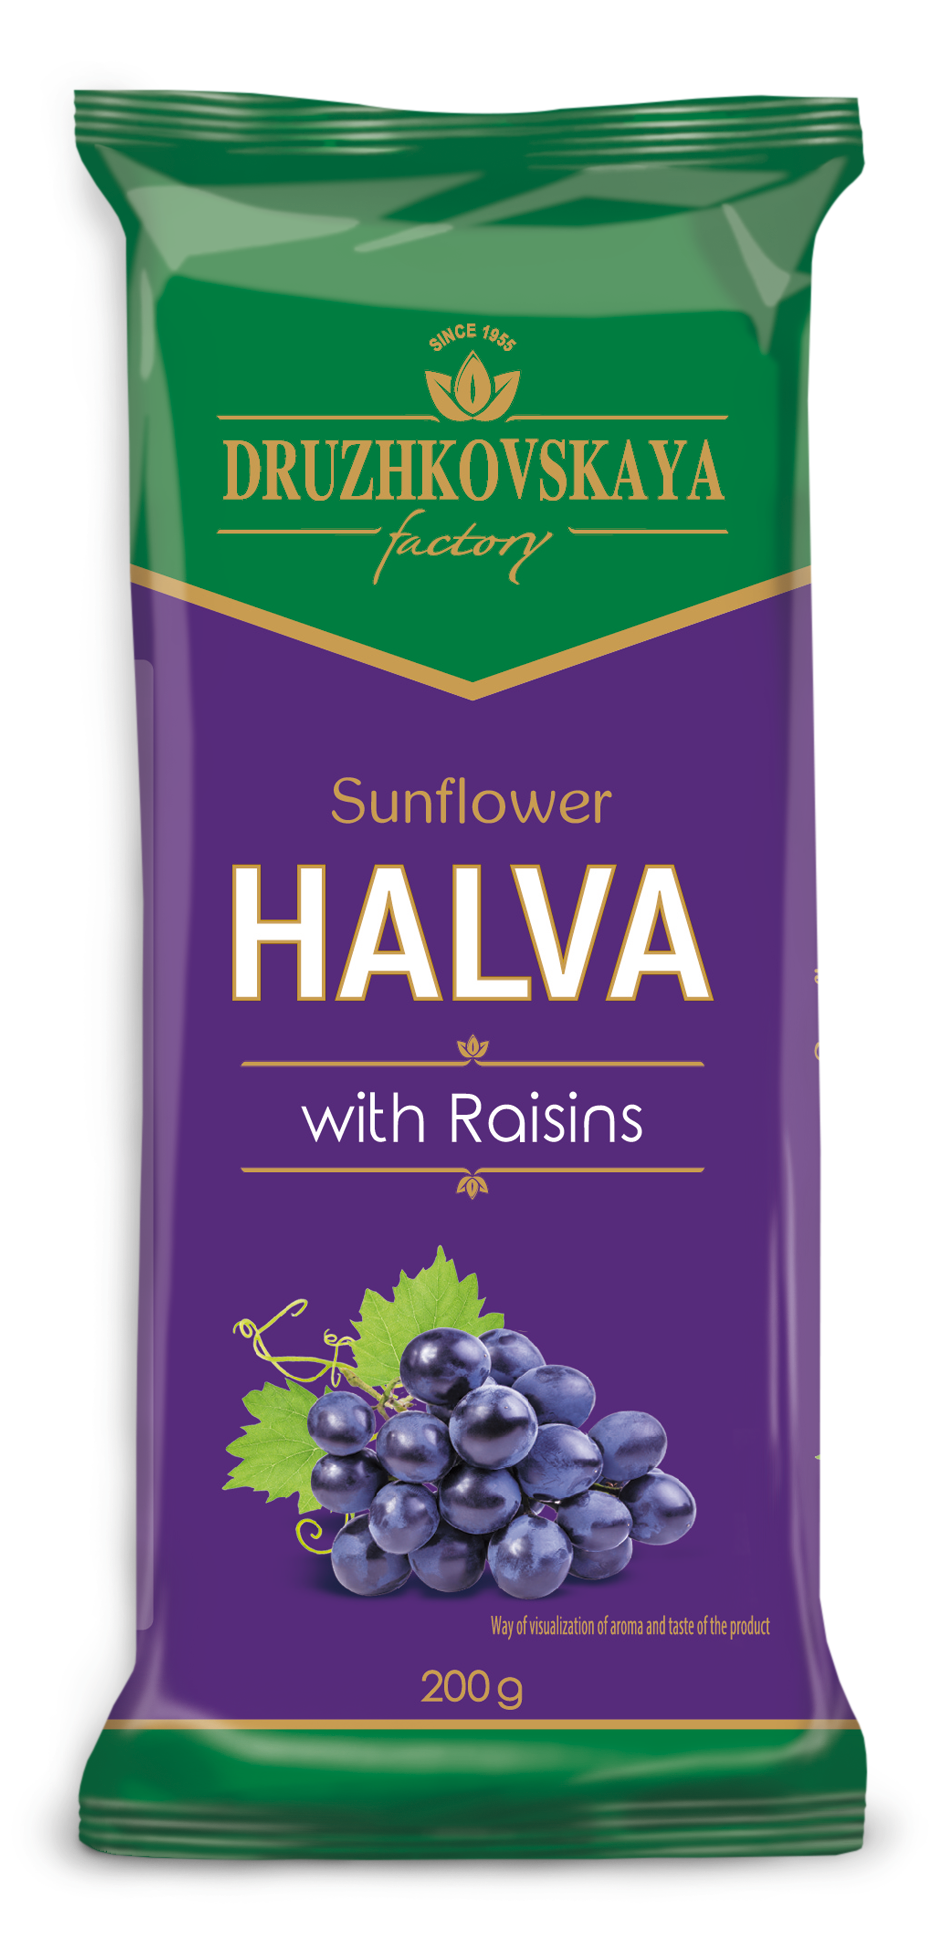 Sunflower Halva with Raisins Packed in Flow-pack, 200 g